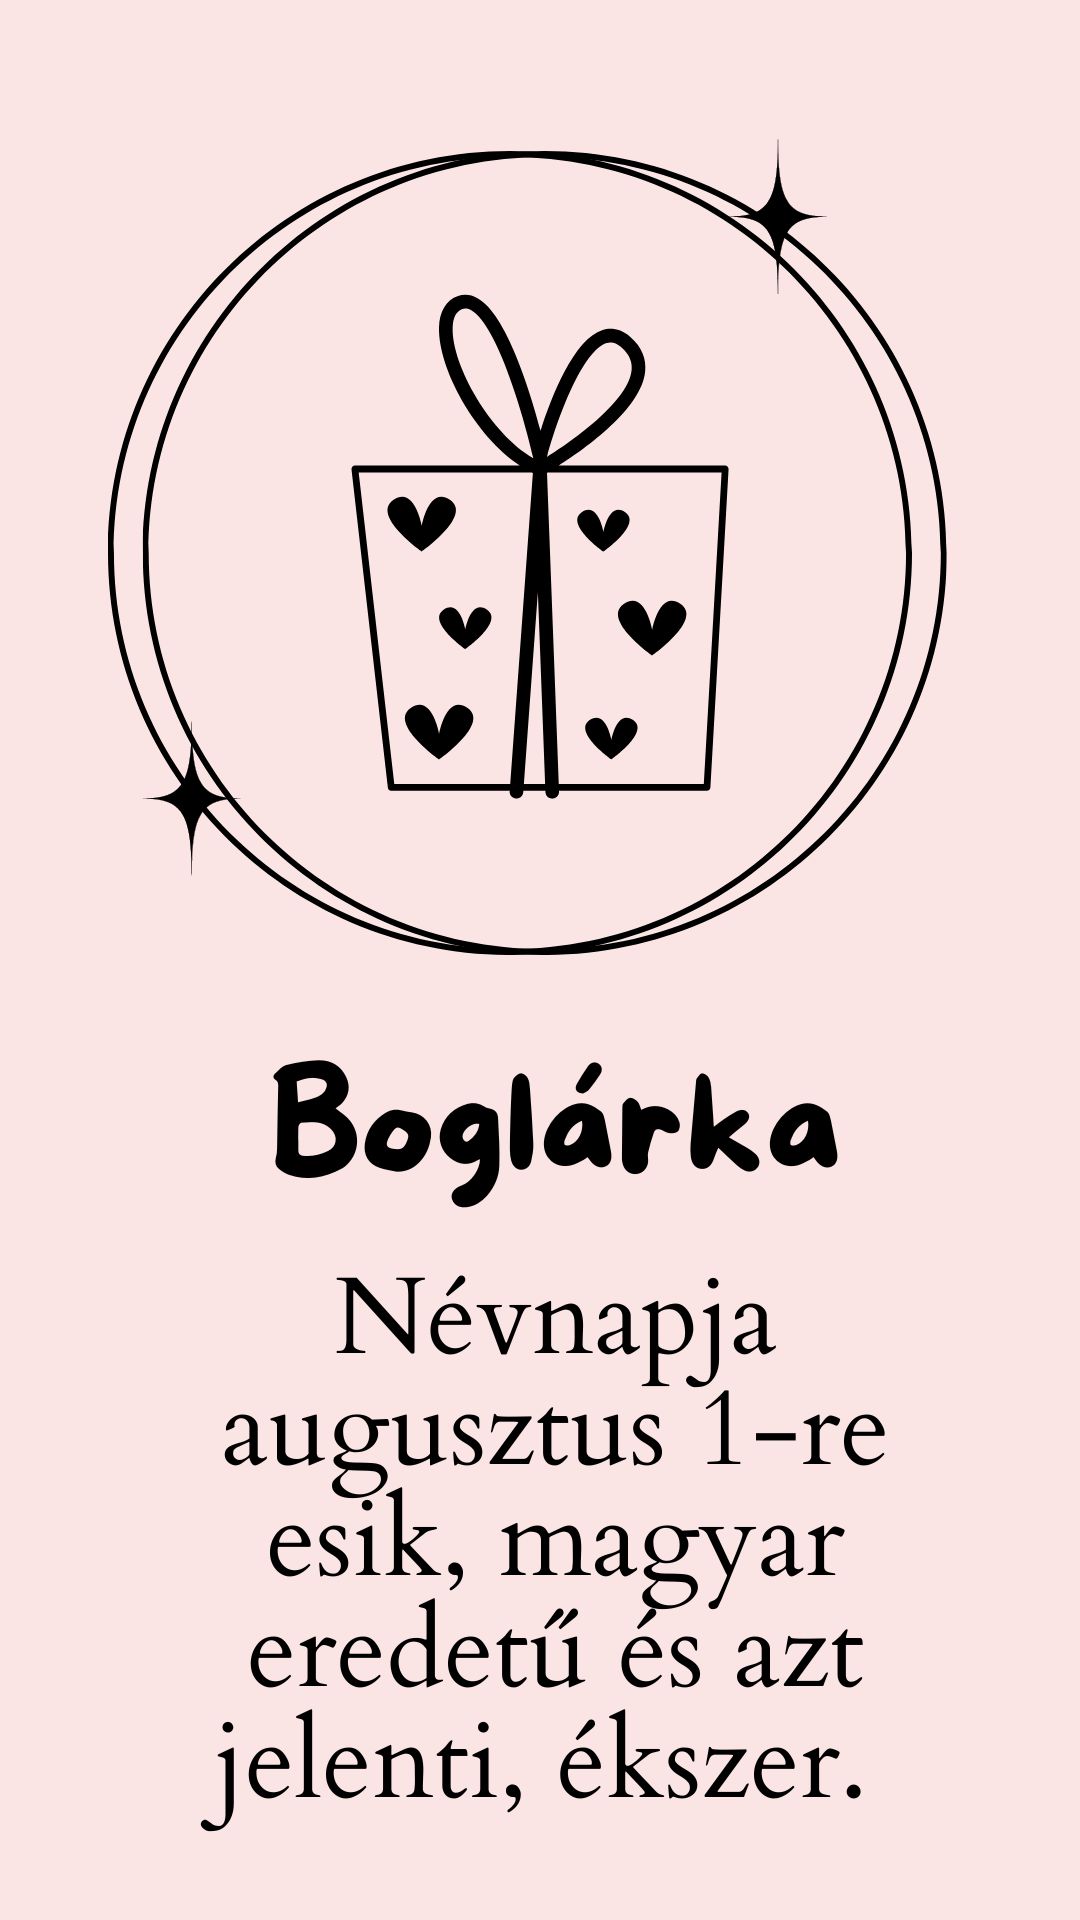 Boglárka név jelentése